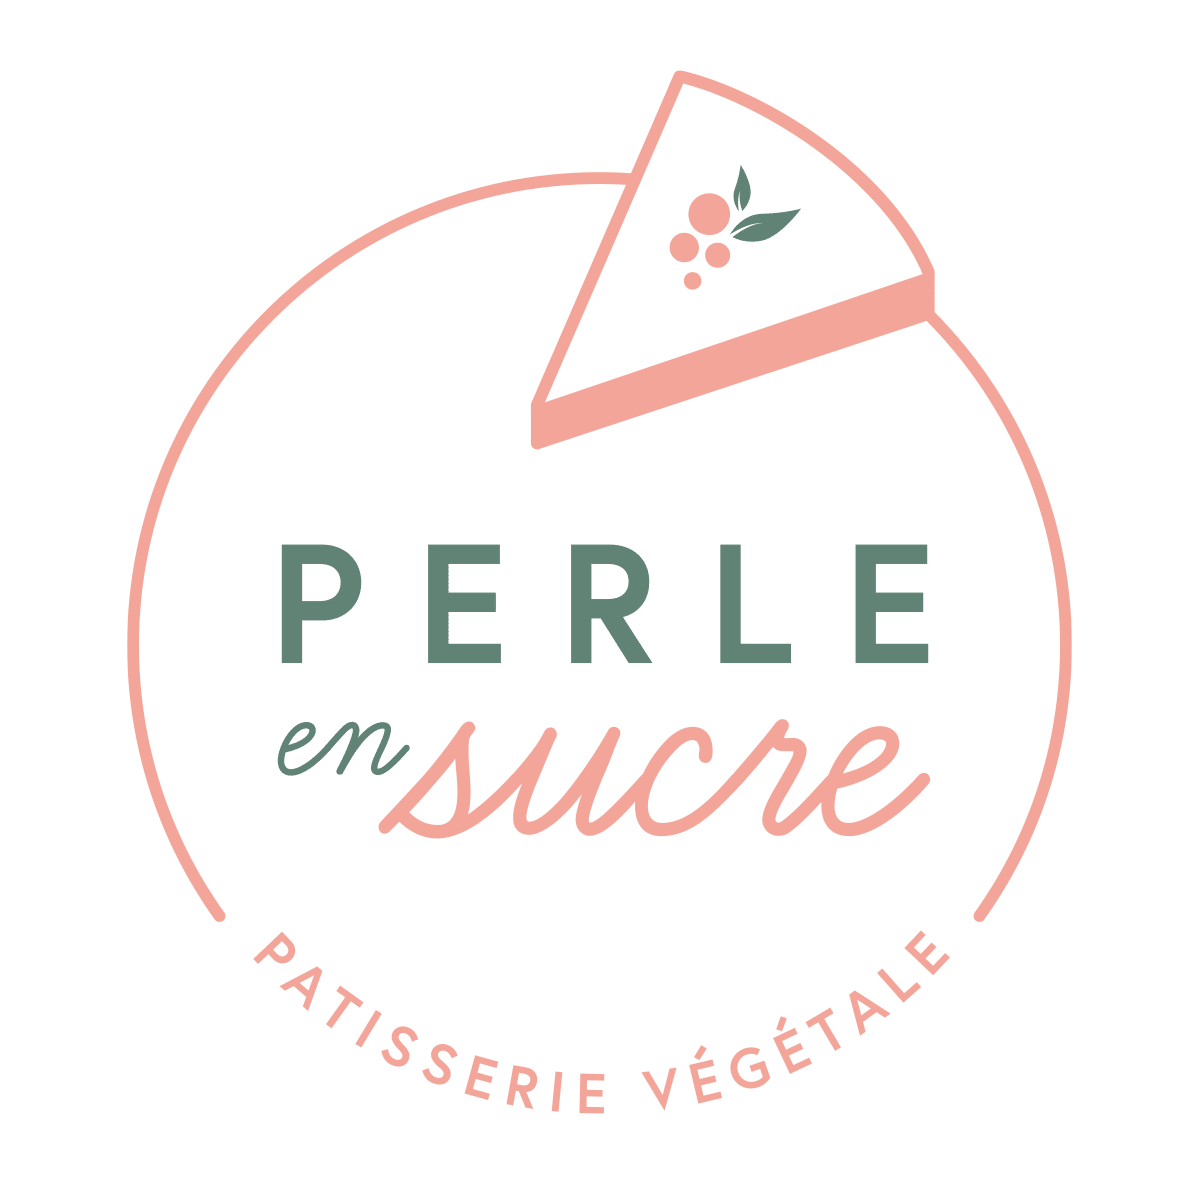 Perle en sucre - Blog de pâtisserie vegan - Recettes sucrées et gourmandes